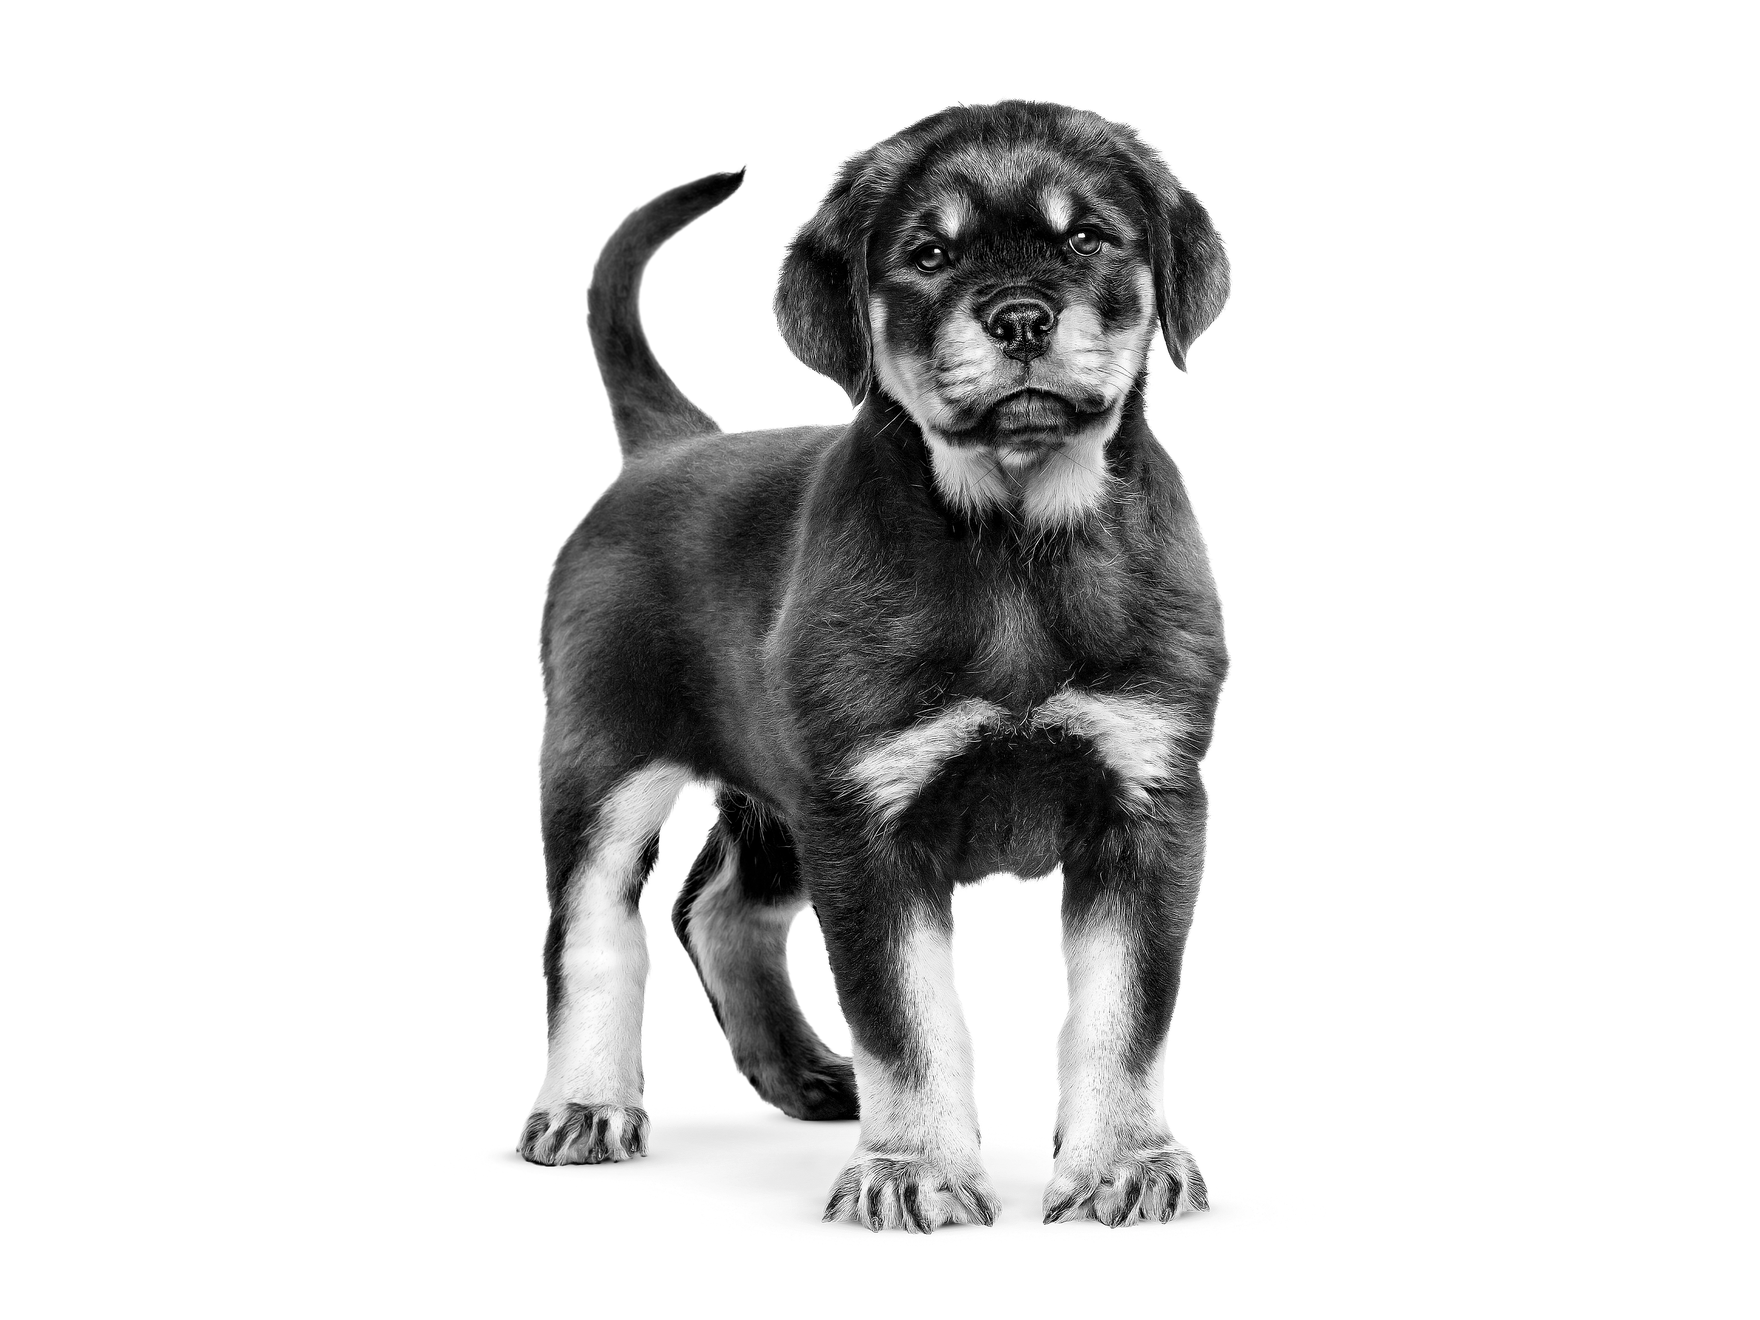 Rottweiler cachorro de pie mirando a la cámara en blanco y negro